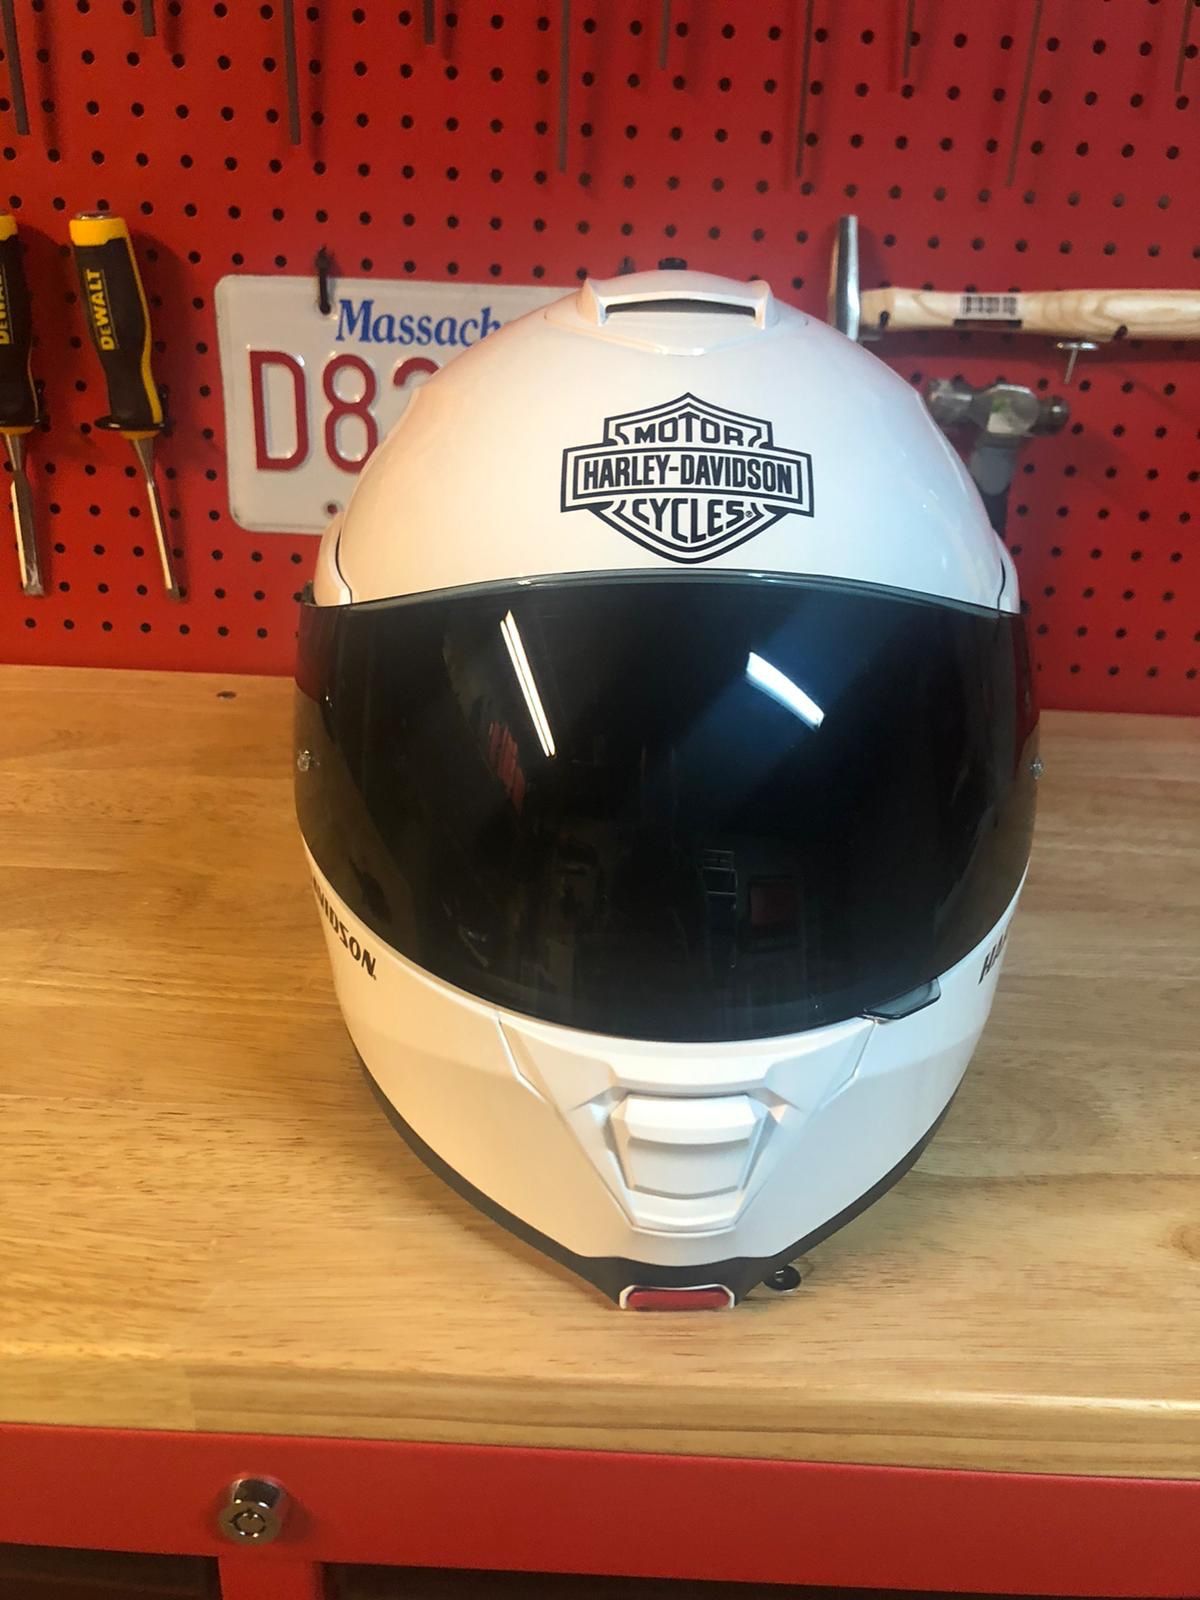 Harley Davidson helmet size large